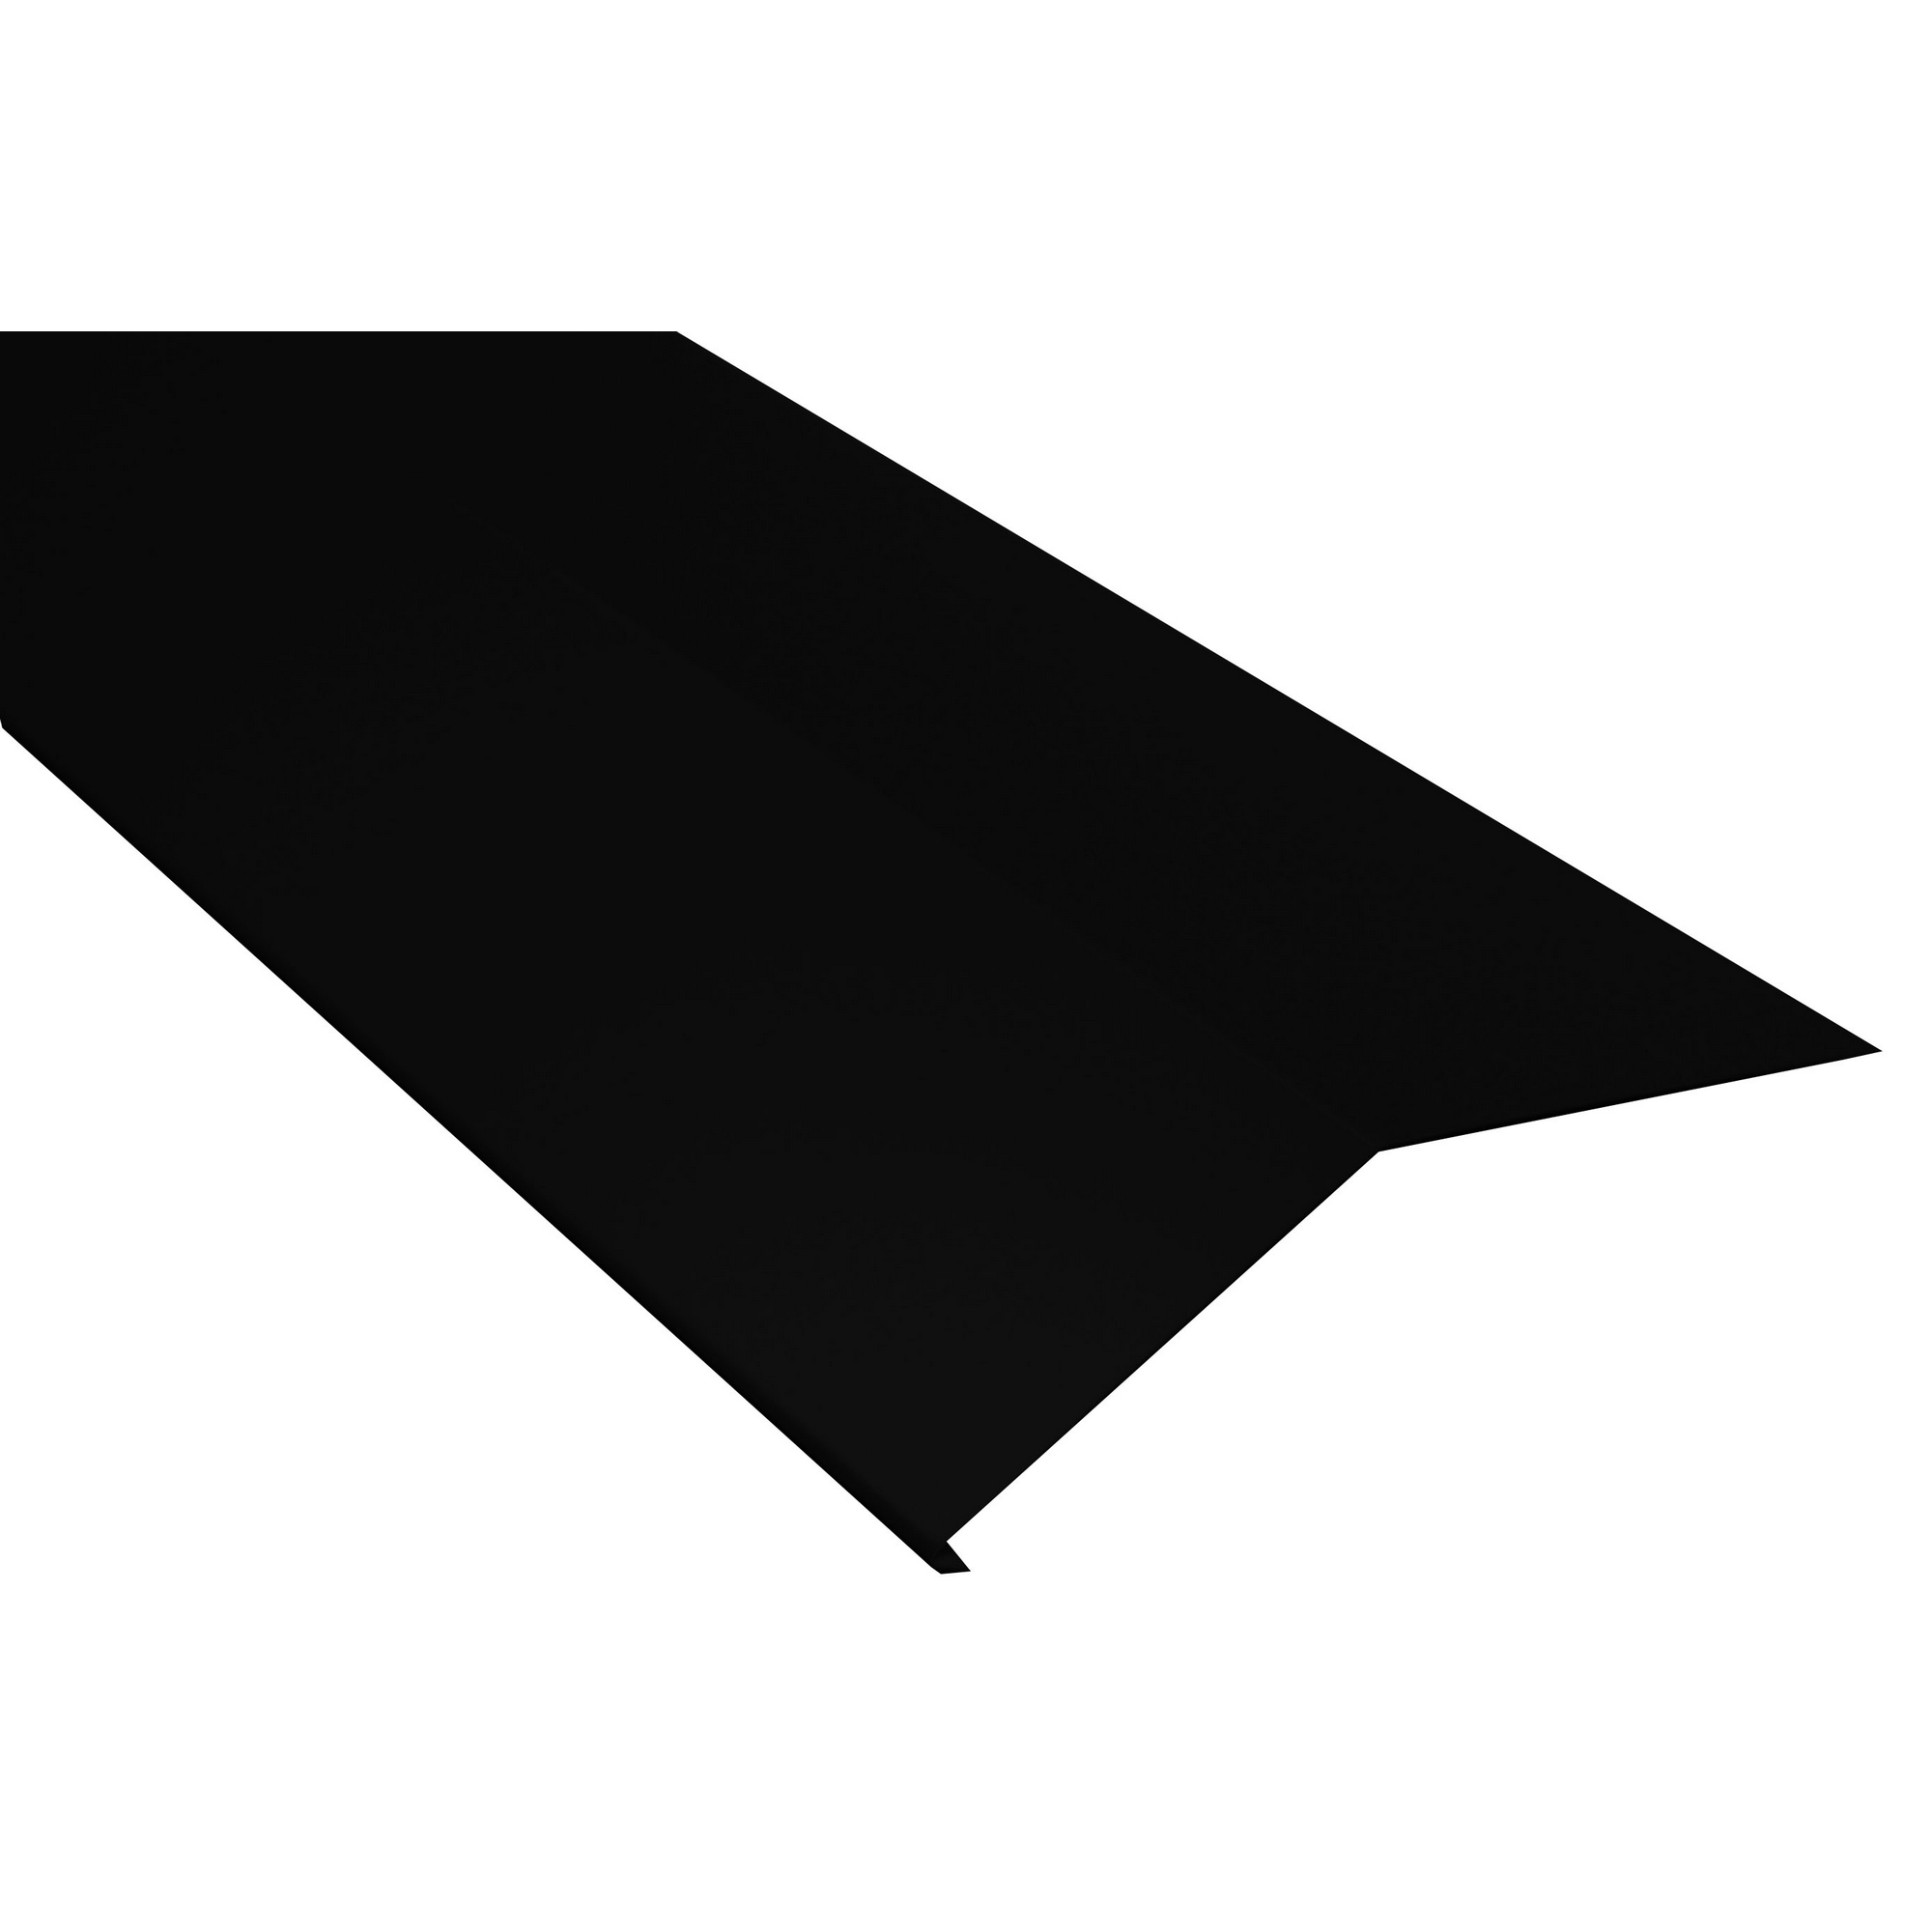 Schürze für Dachrinnen schwarz verzinkt 100 x 20,8 x 0,04 cm + product picture